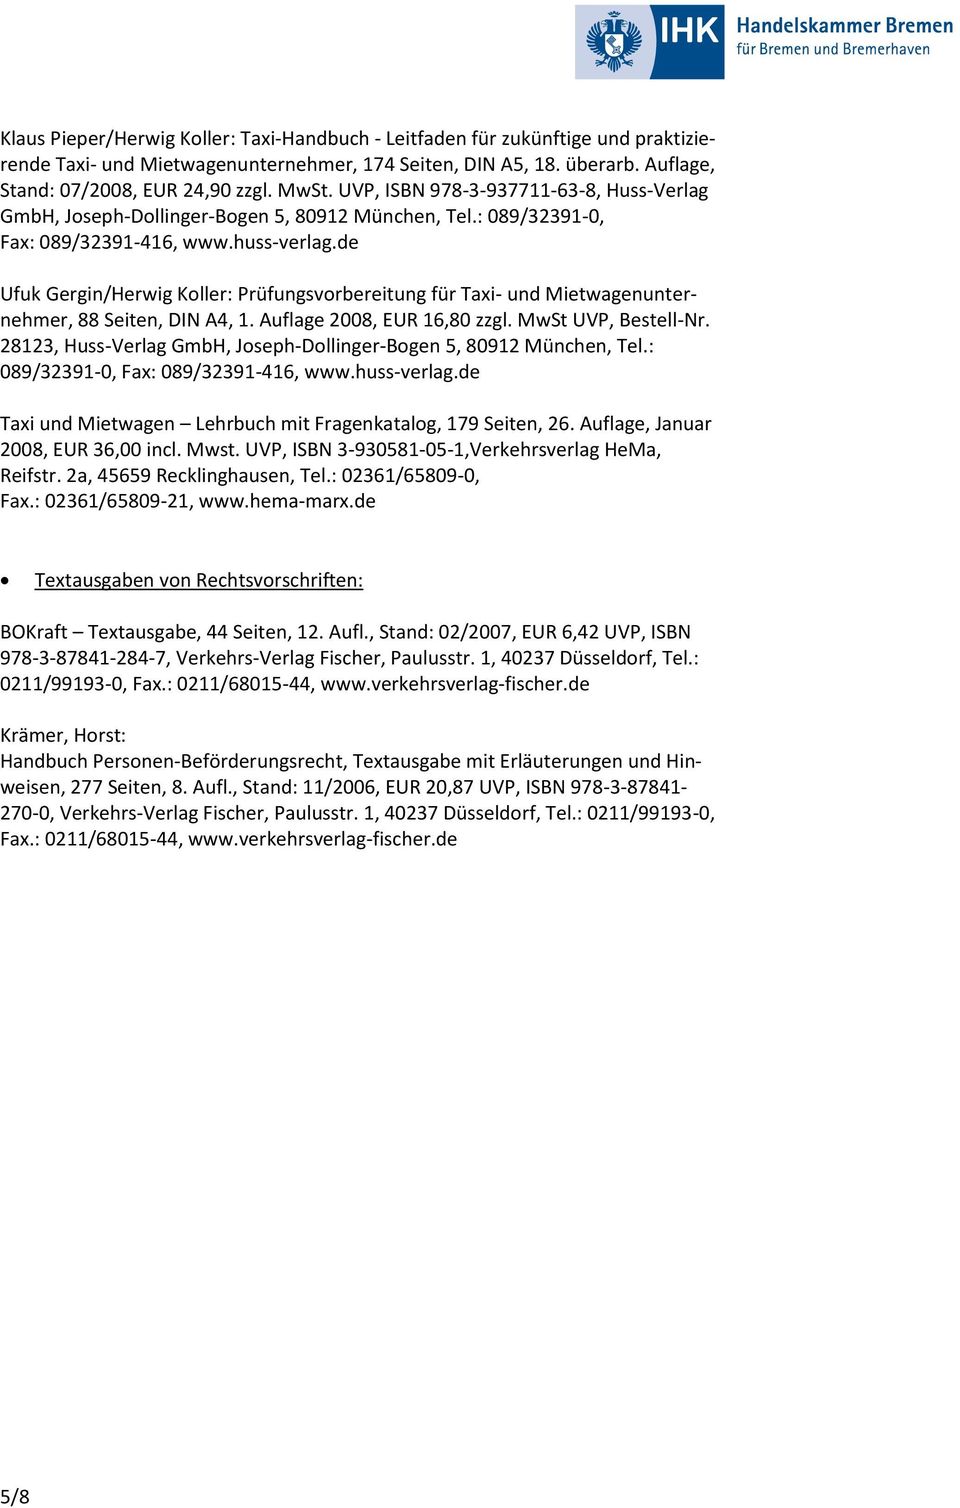 de Ufuk Gergin/Herwig Koller: Prüfungsvorbereitung für Taxi- und Mietwagenunternehmer, 88 Seiten, DIN A4, 1. Auflage 2008, EUR 16,80 zzgl. MwSt UVP, Bestell-Nr.